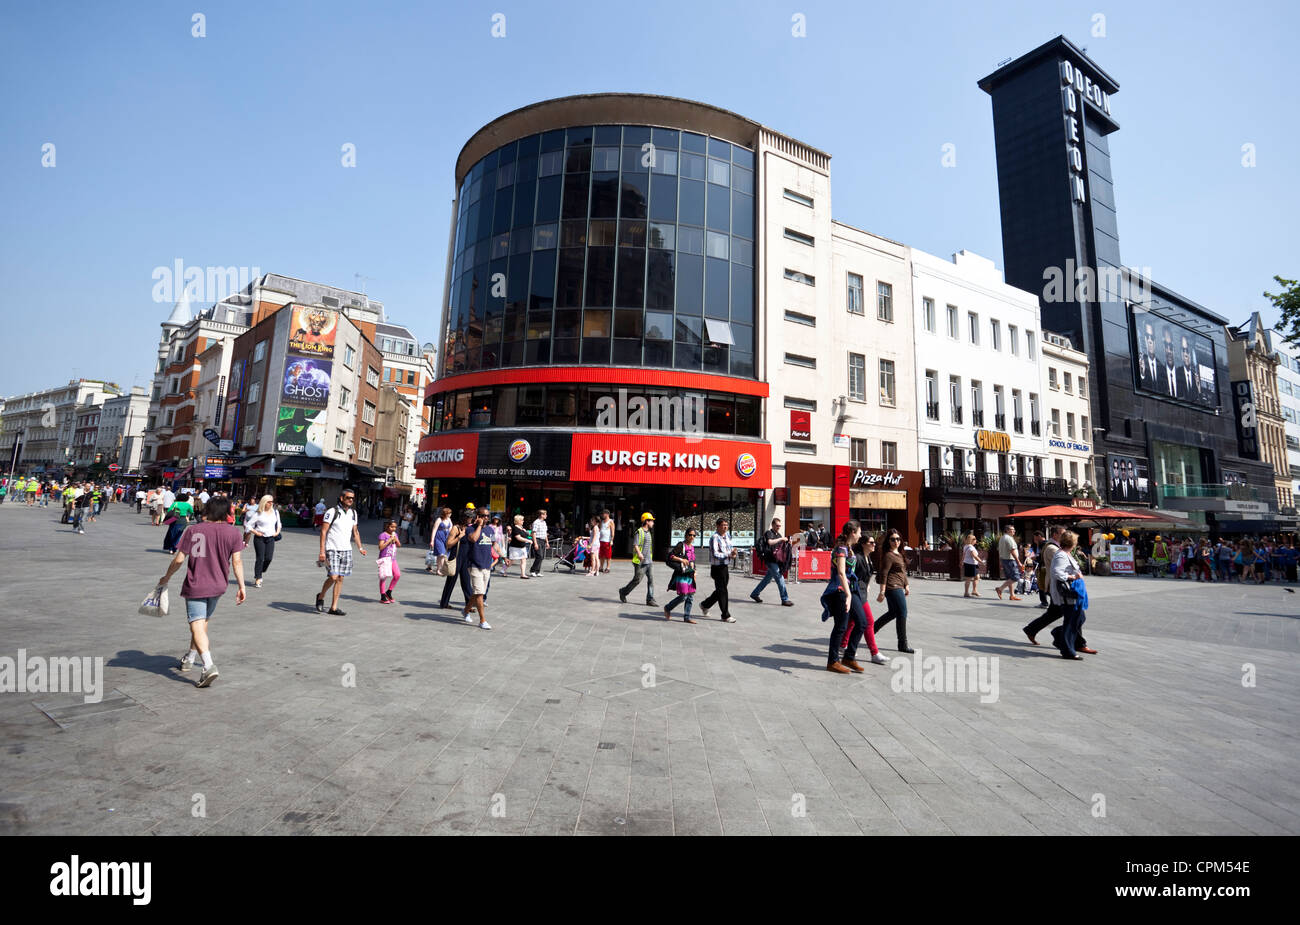 La vie quotidienne de la ville de Leicester Square, London, England, UK Banque D'Images